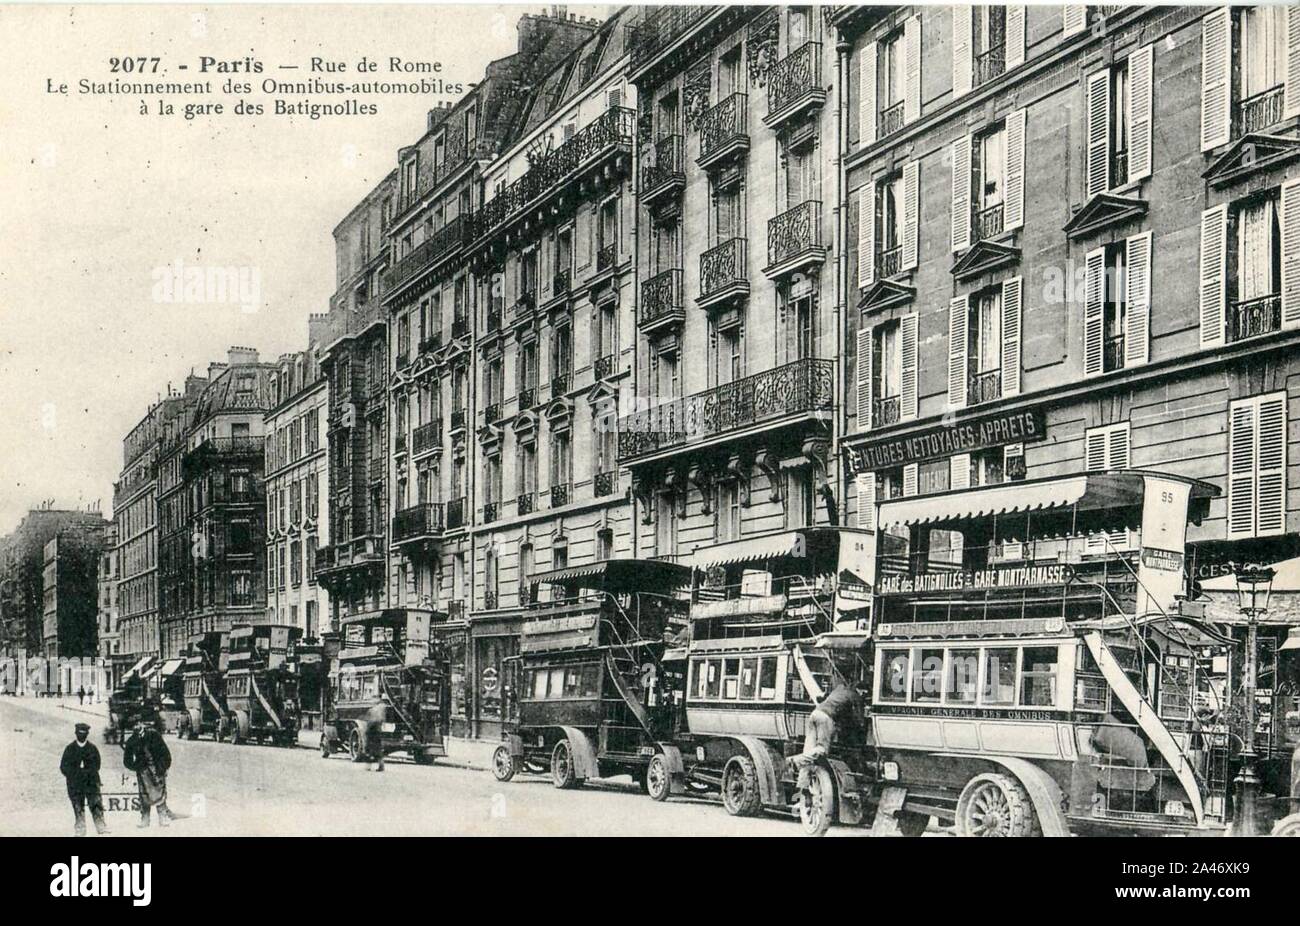 FF 2077 - PARIS - Rue de Rome - Le stationnement des Omnibus-automobiles à la gare des Batignolles. Stock Photo